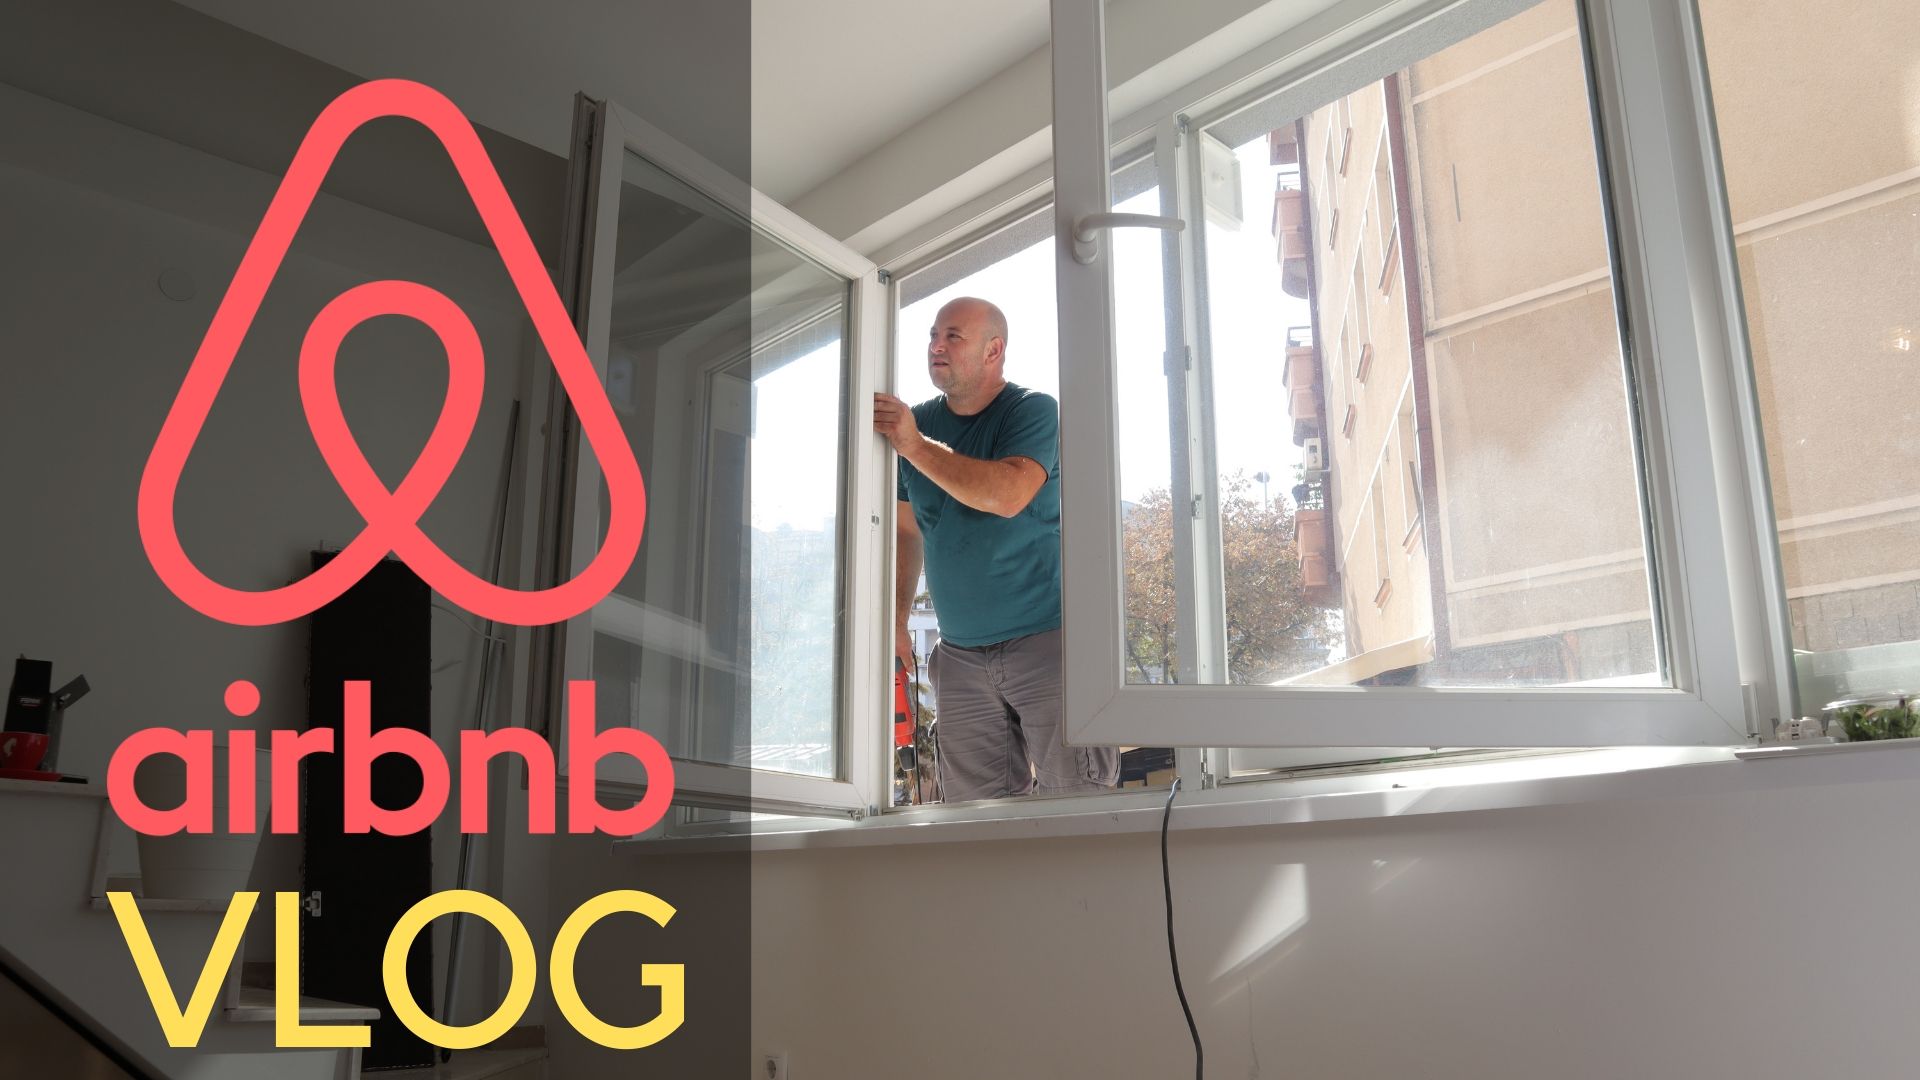 airbnb vlog episode 2